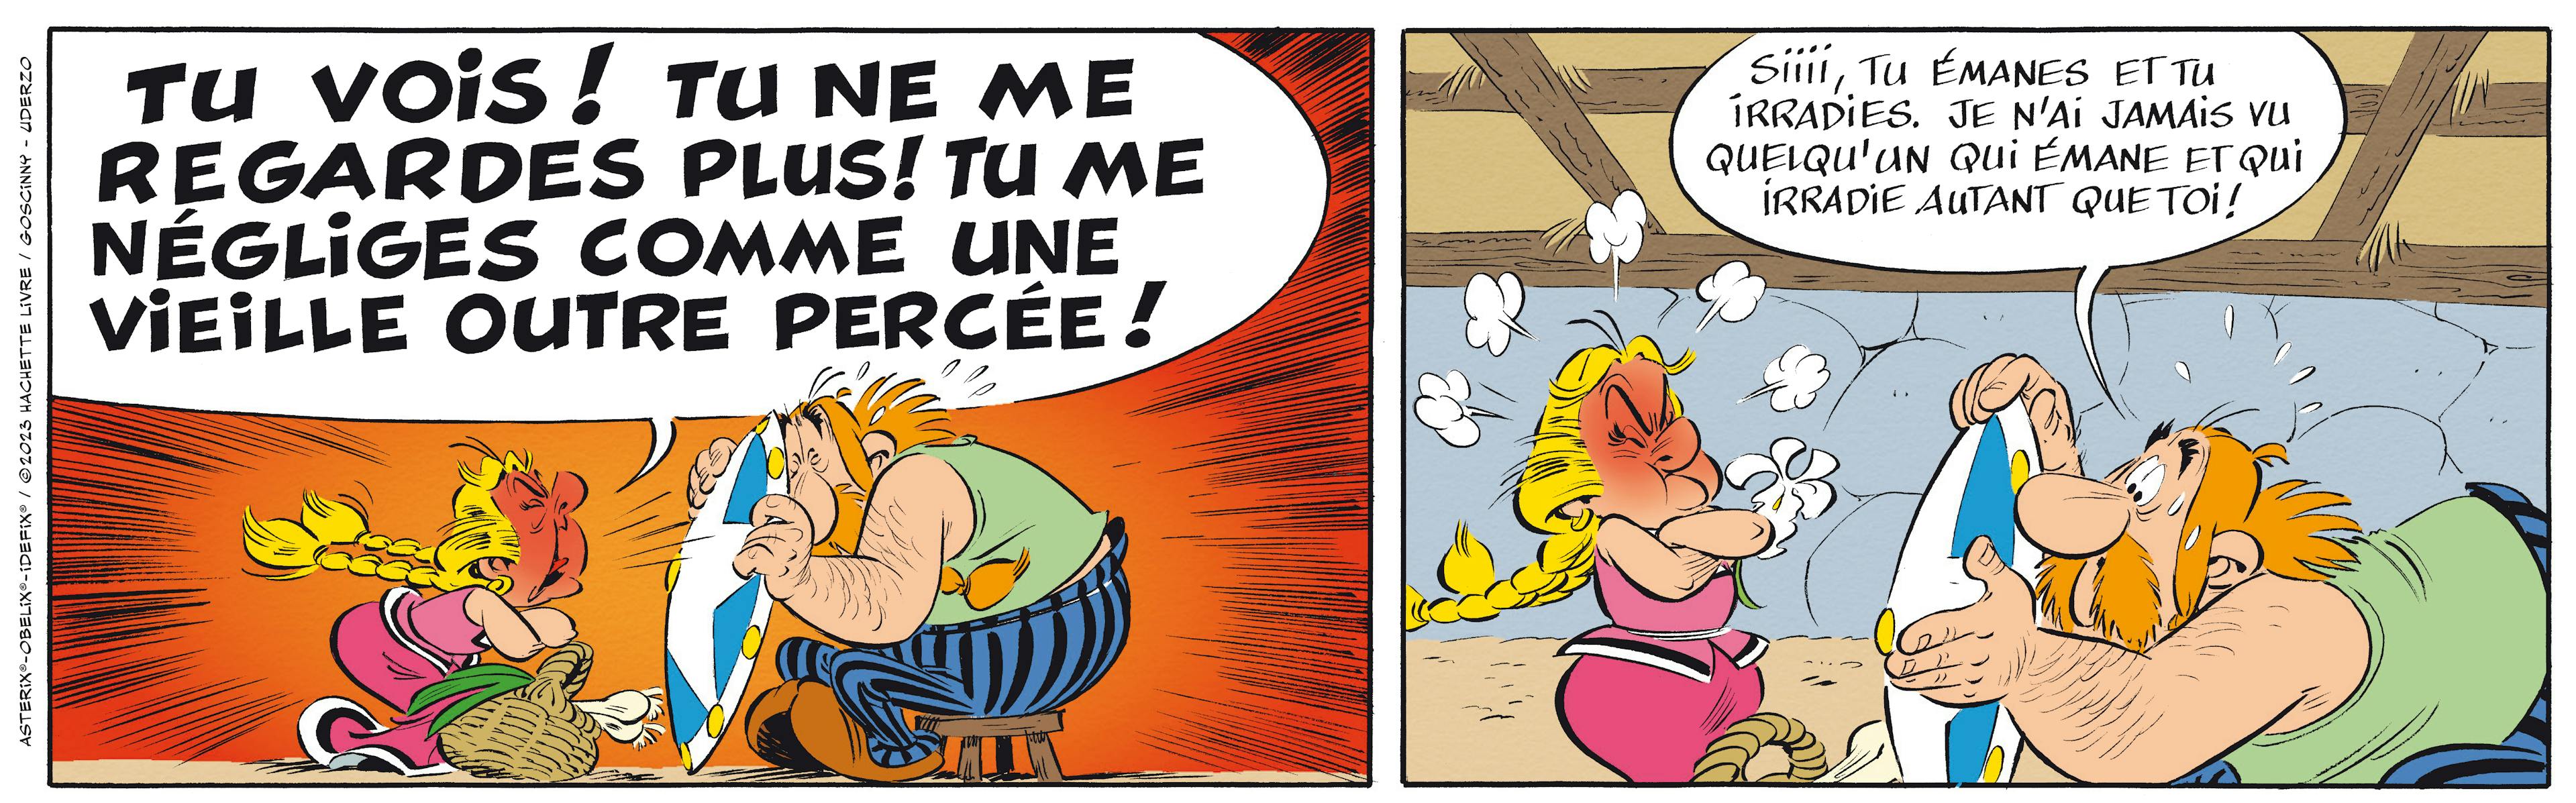 Double case du dernier album des Aventures d'Asterix le Gaulois "L'iris blanc"